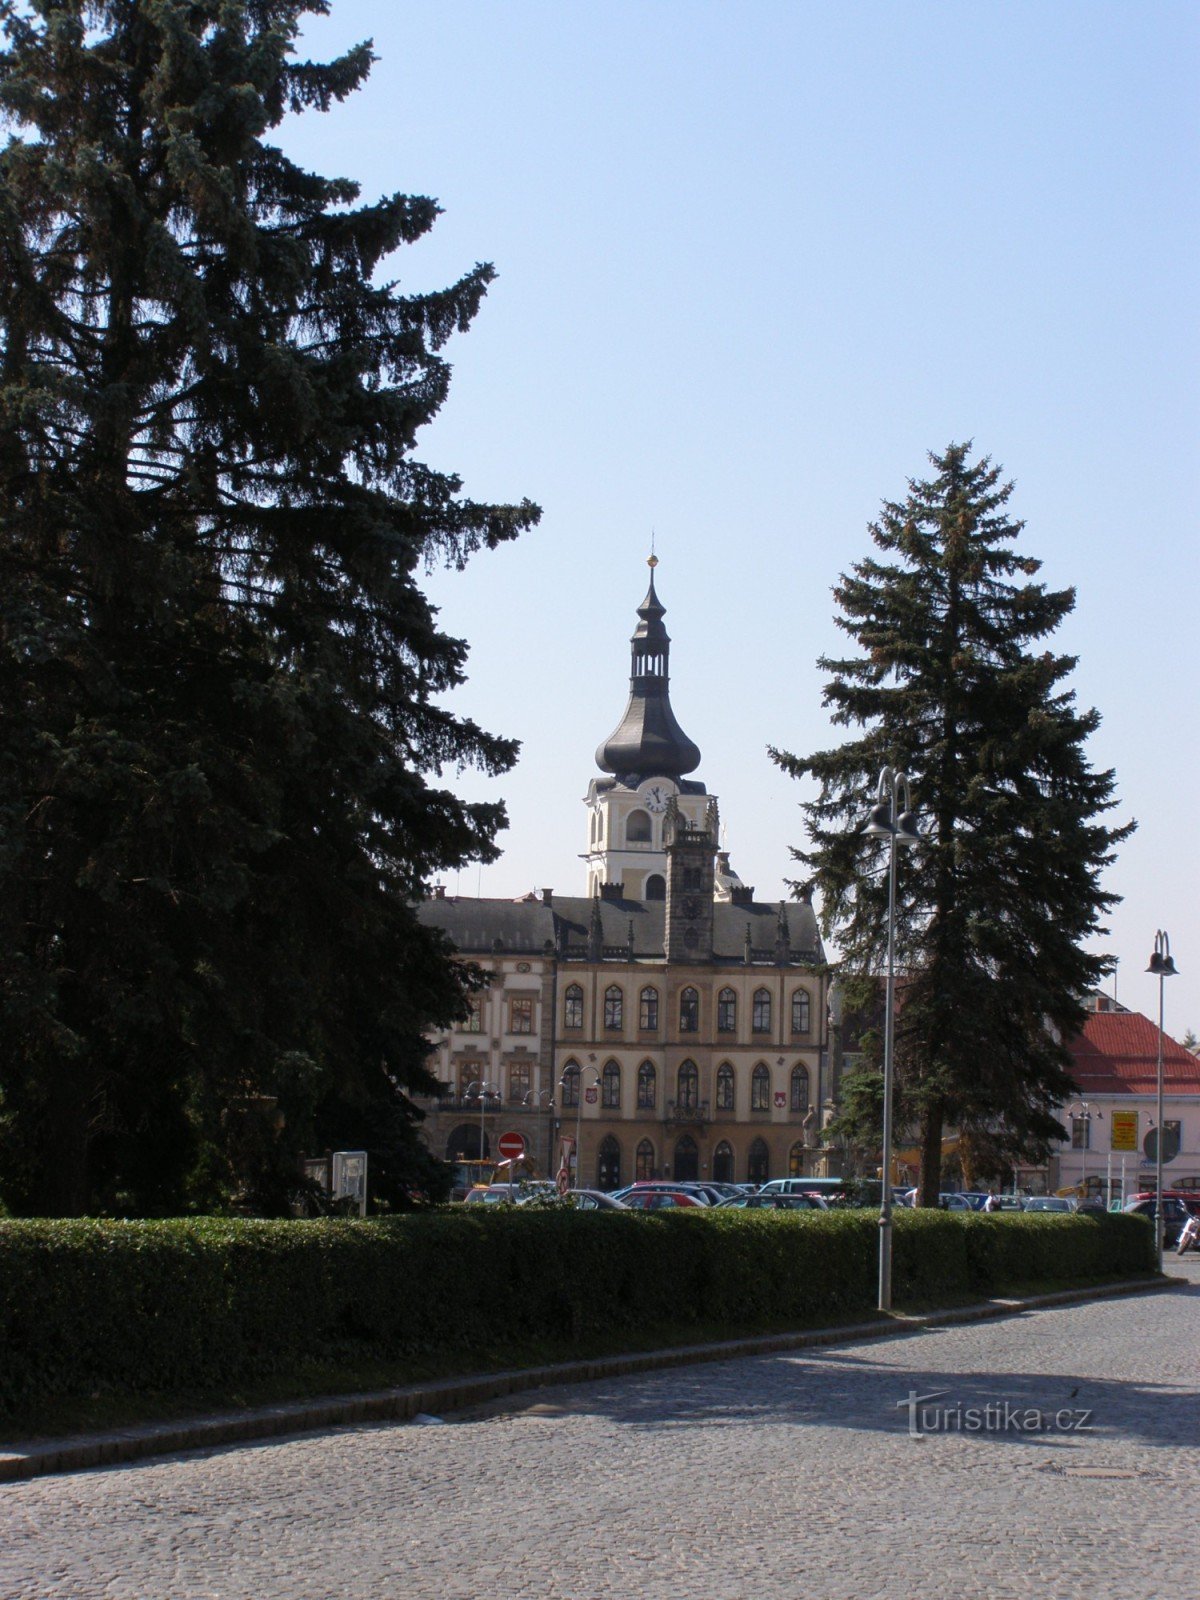 Hořice - Hôtel de ville néo-gothique